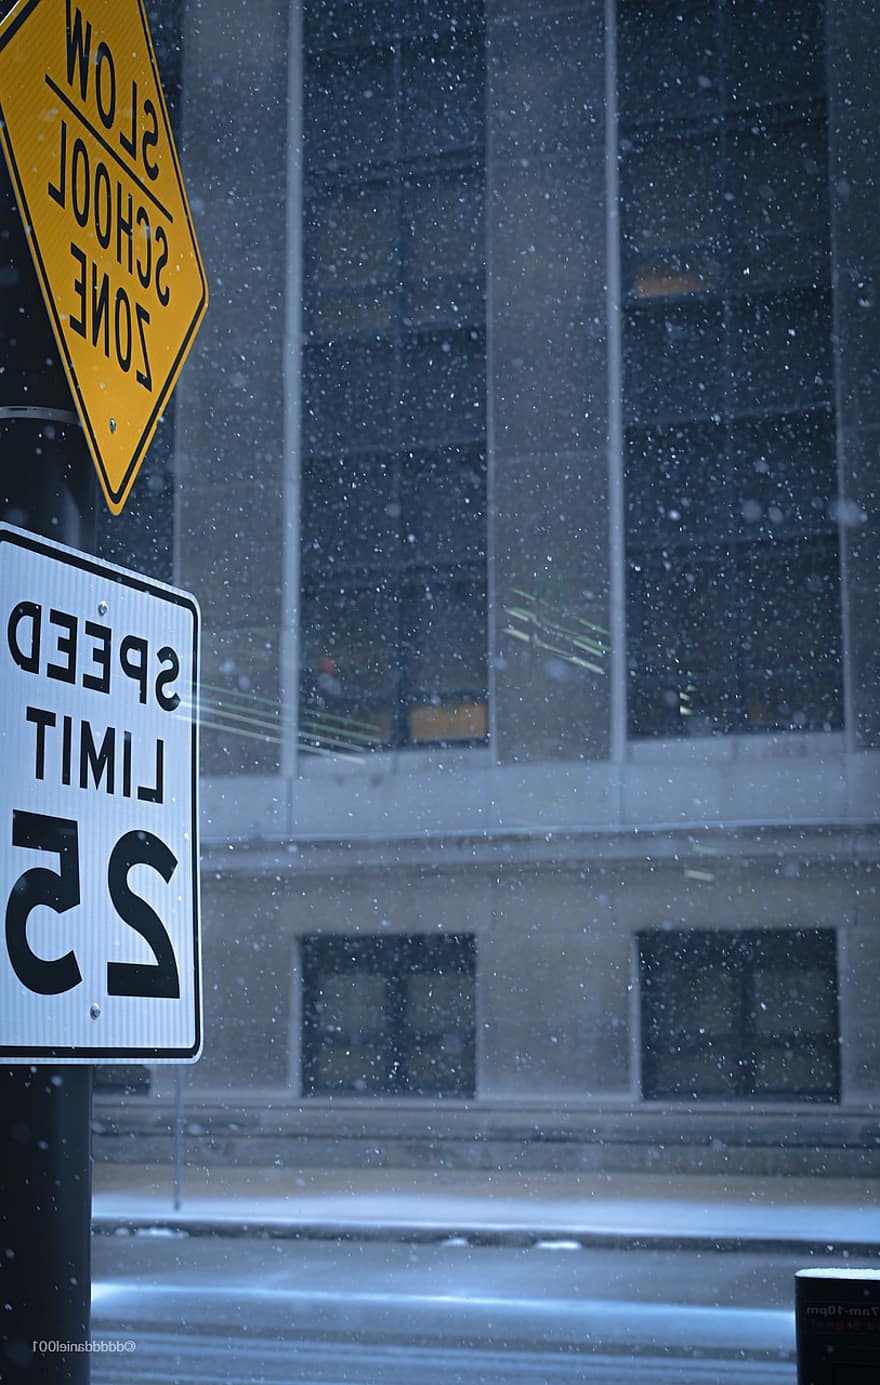 merkki, katu, lumi, talvi-, lumisade, liikennemerkki, nopeusrajoitus, kouluvyöhykkeellä, tie, ulkona, sää